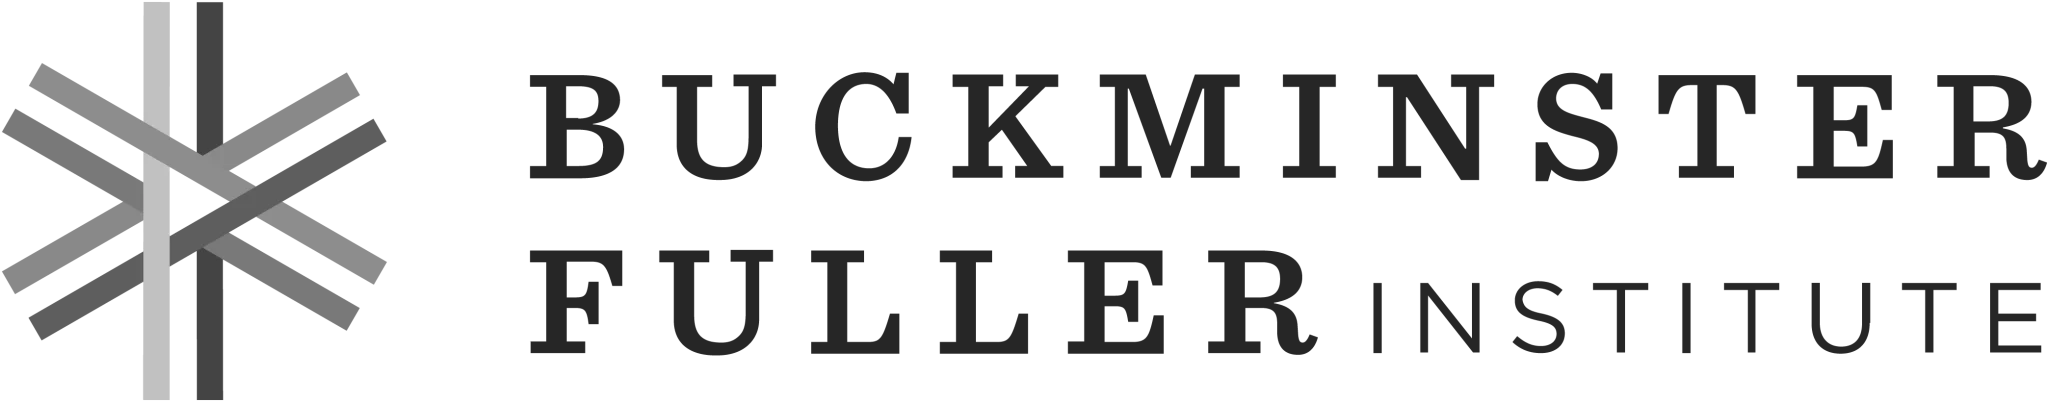 Buckminster Fuller Institute logo.